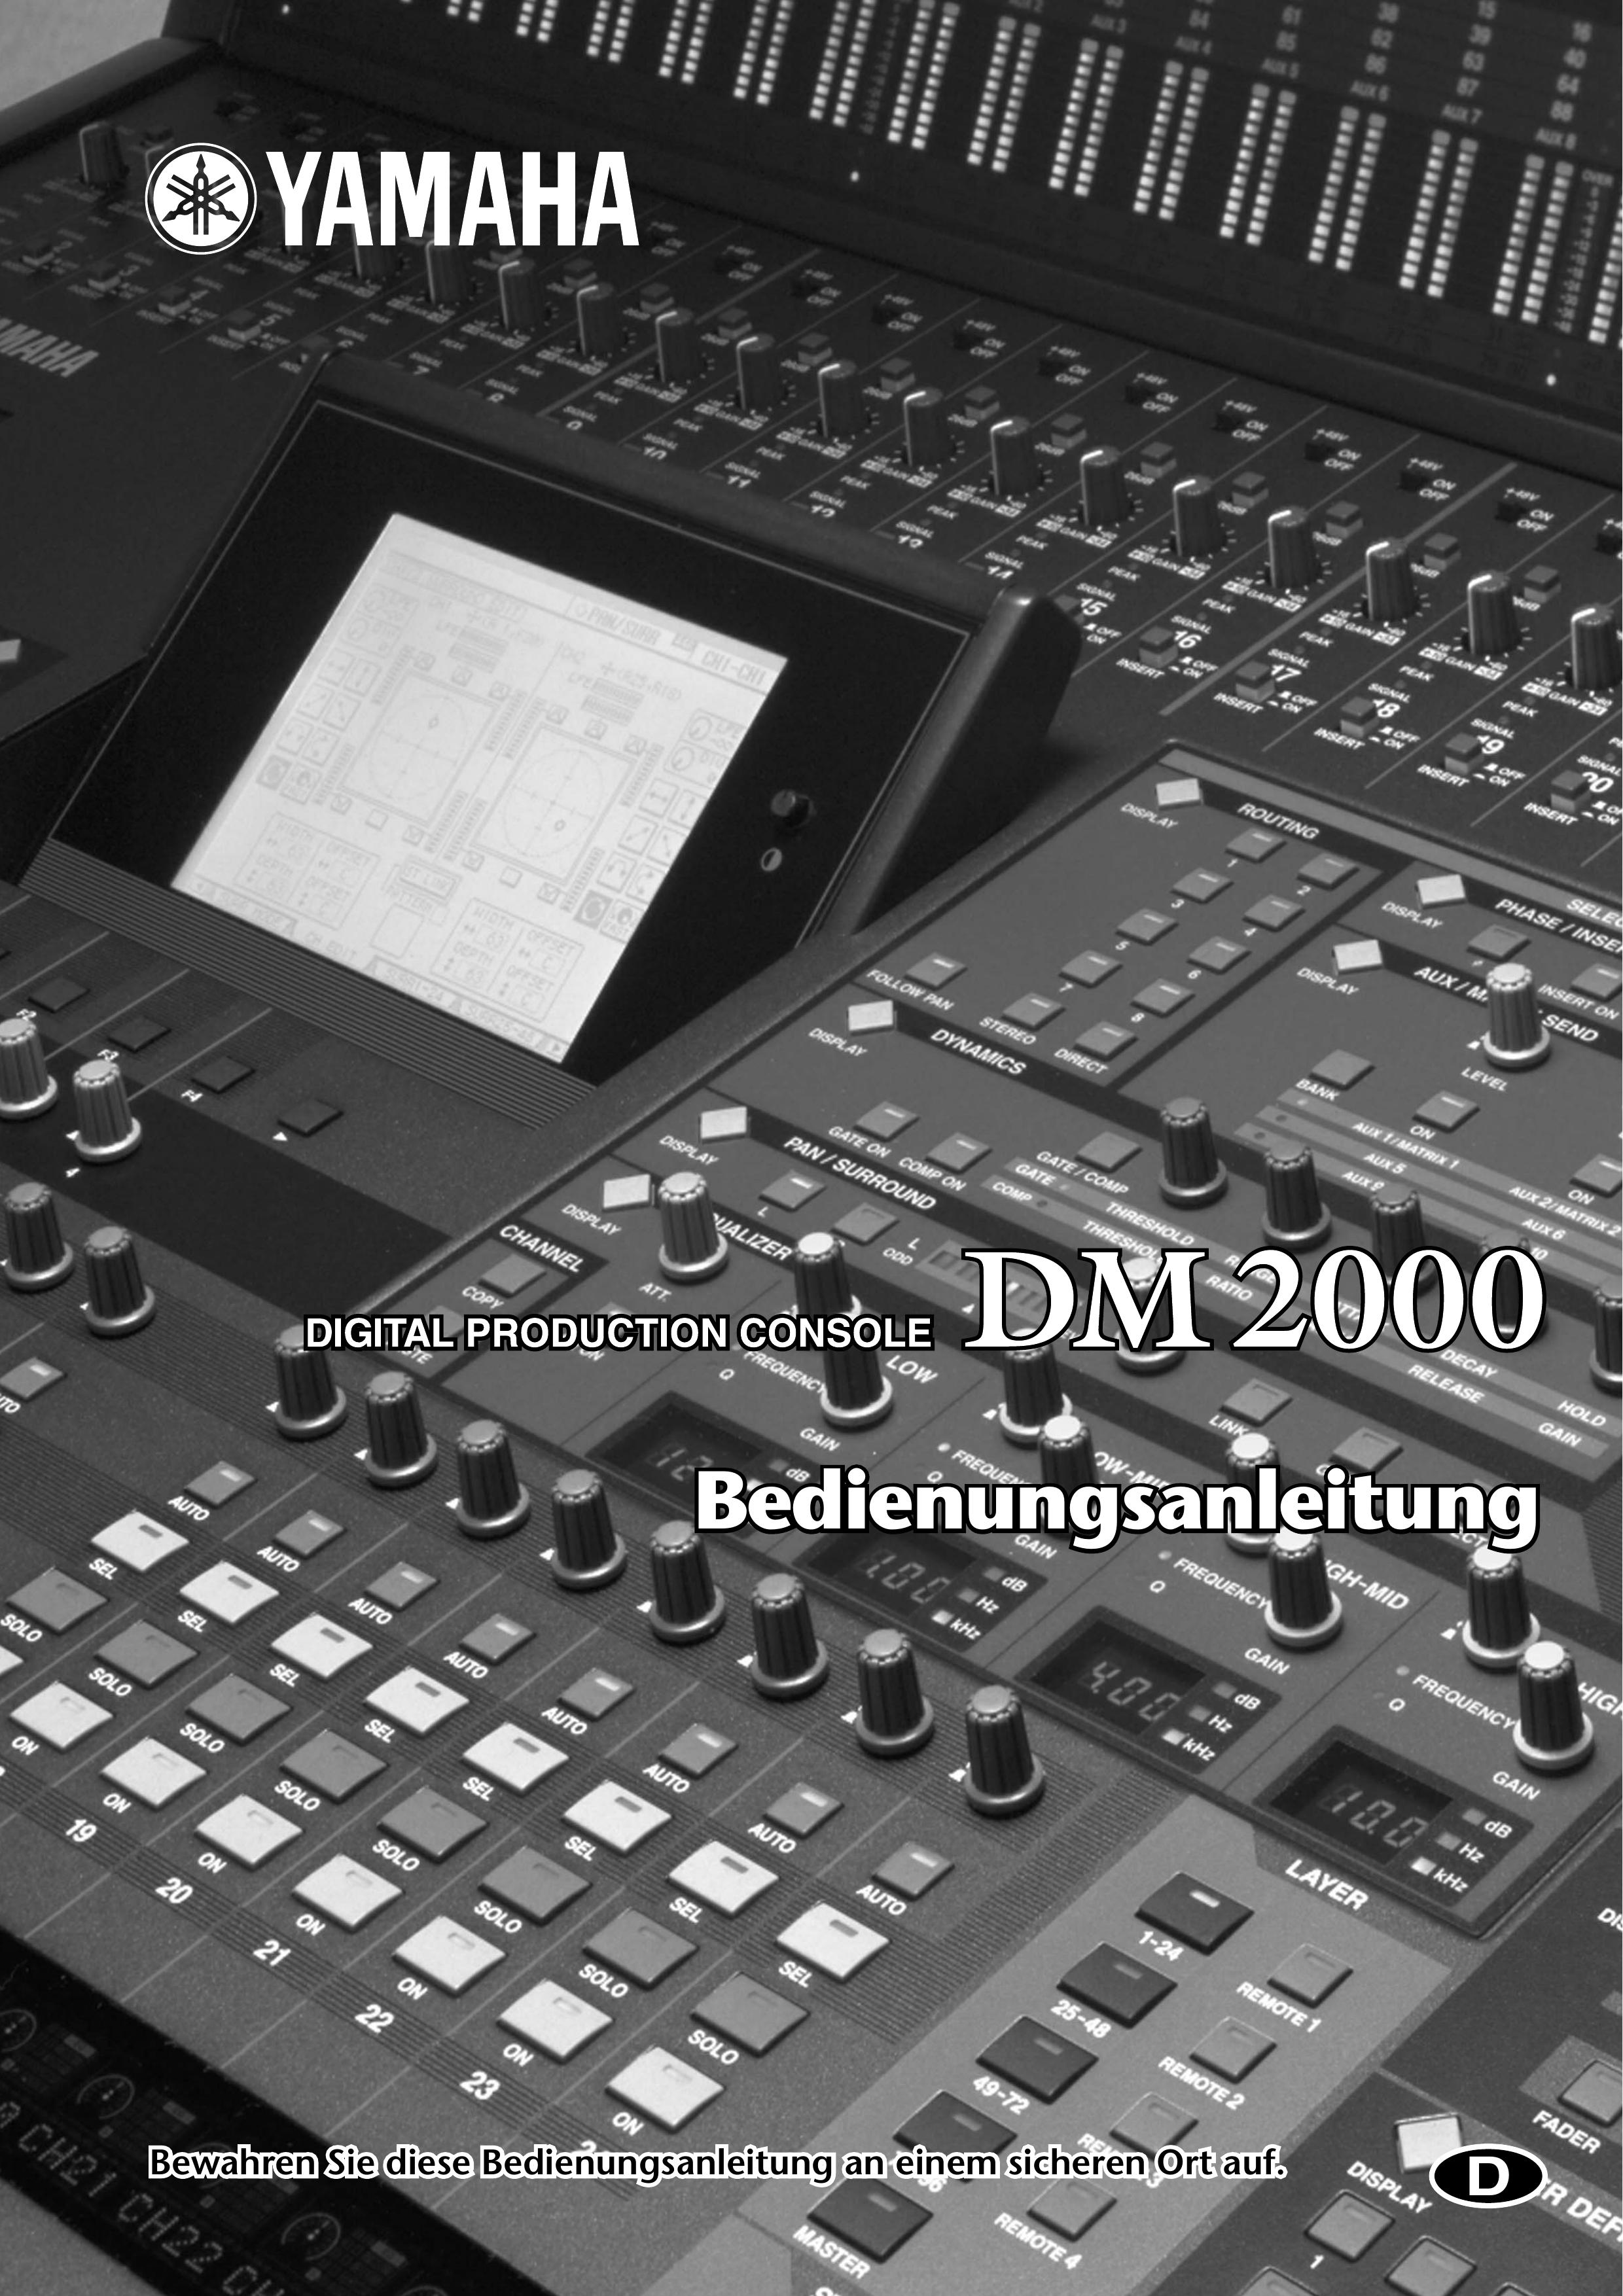 Yamaha DM2000 Music Mixer User Manual